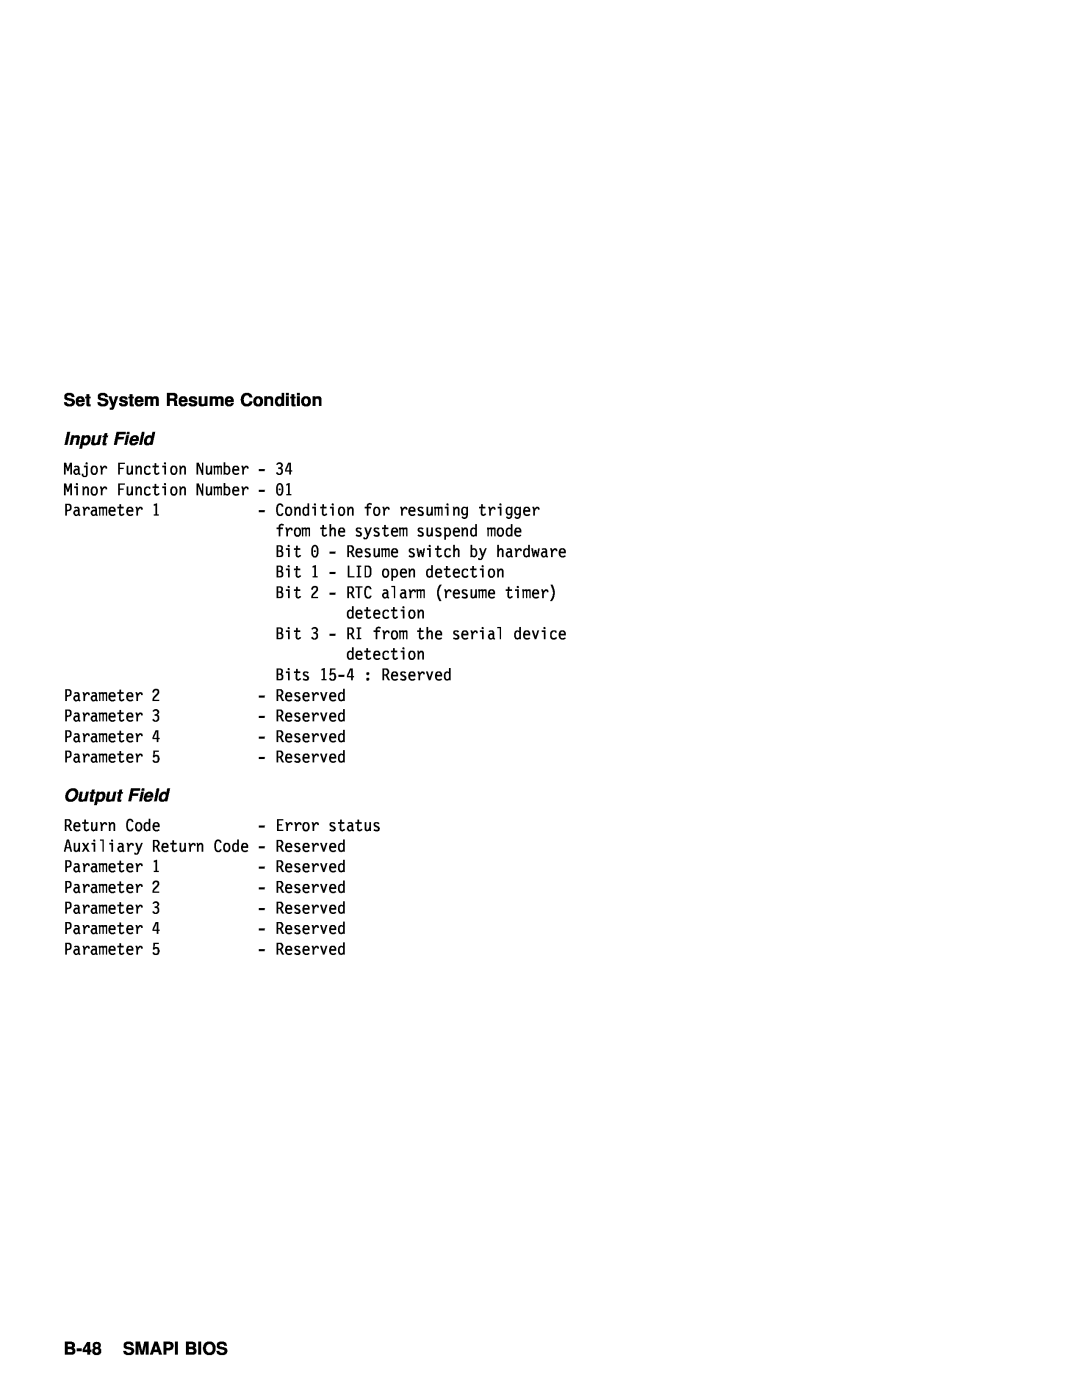 IBM 770 manual B-48, Set System Resume 